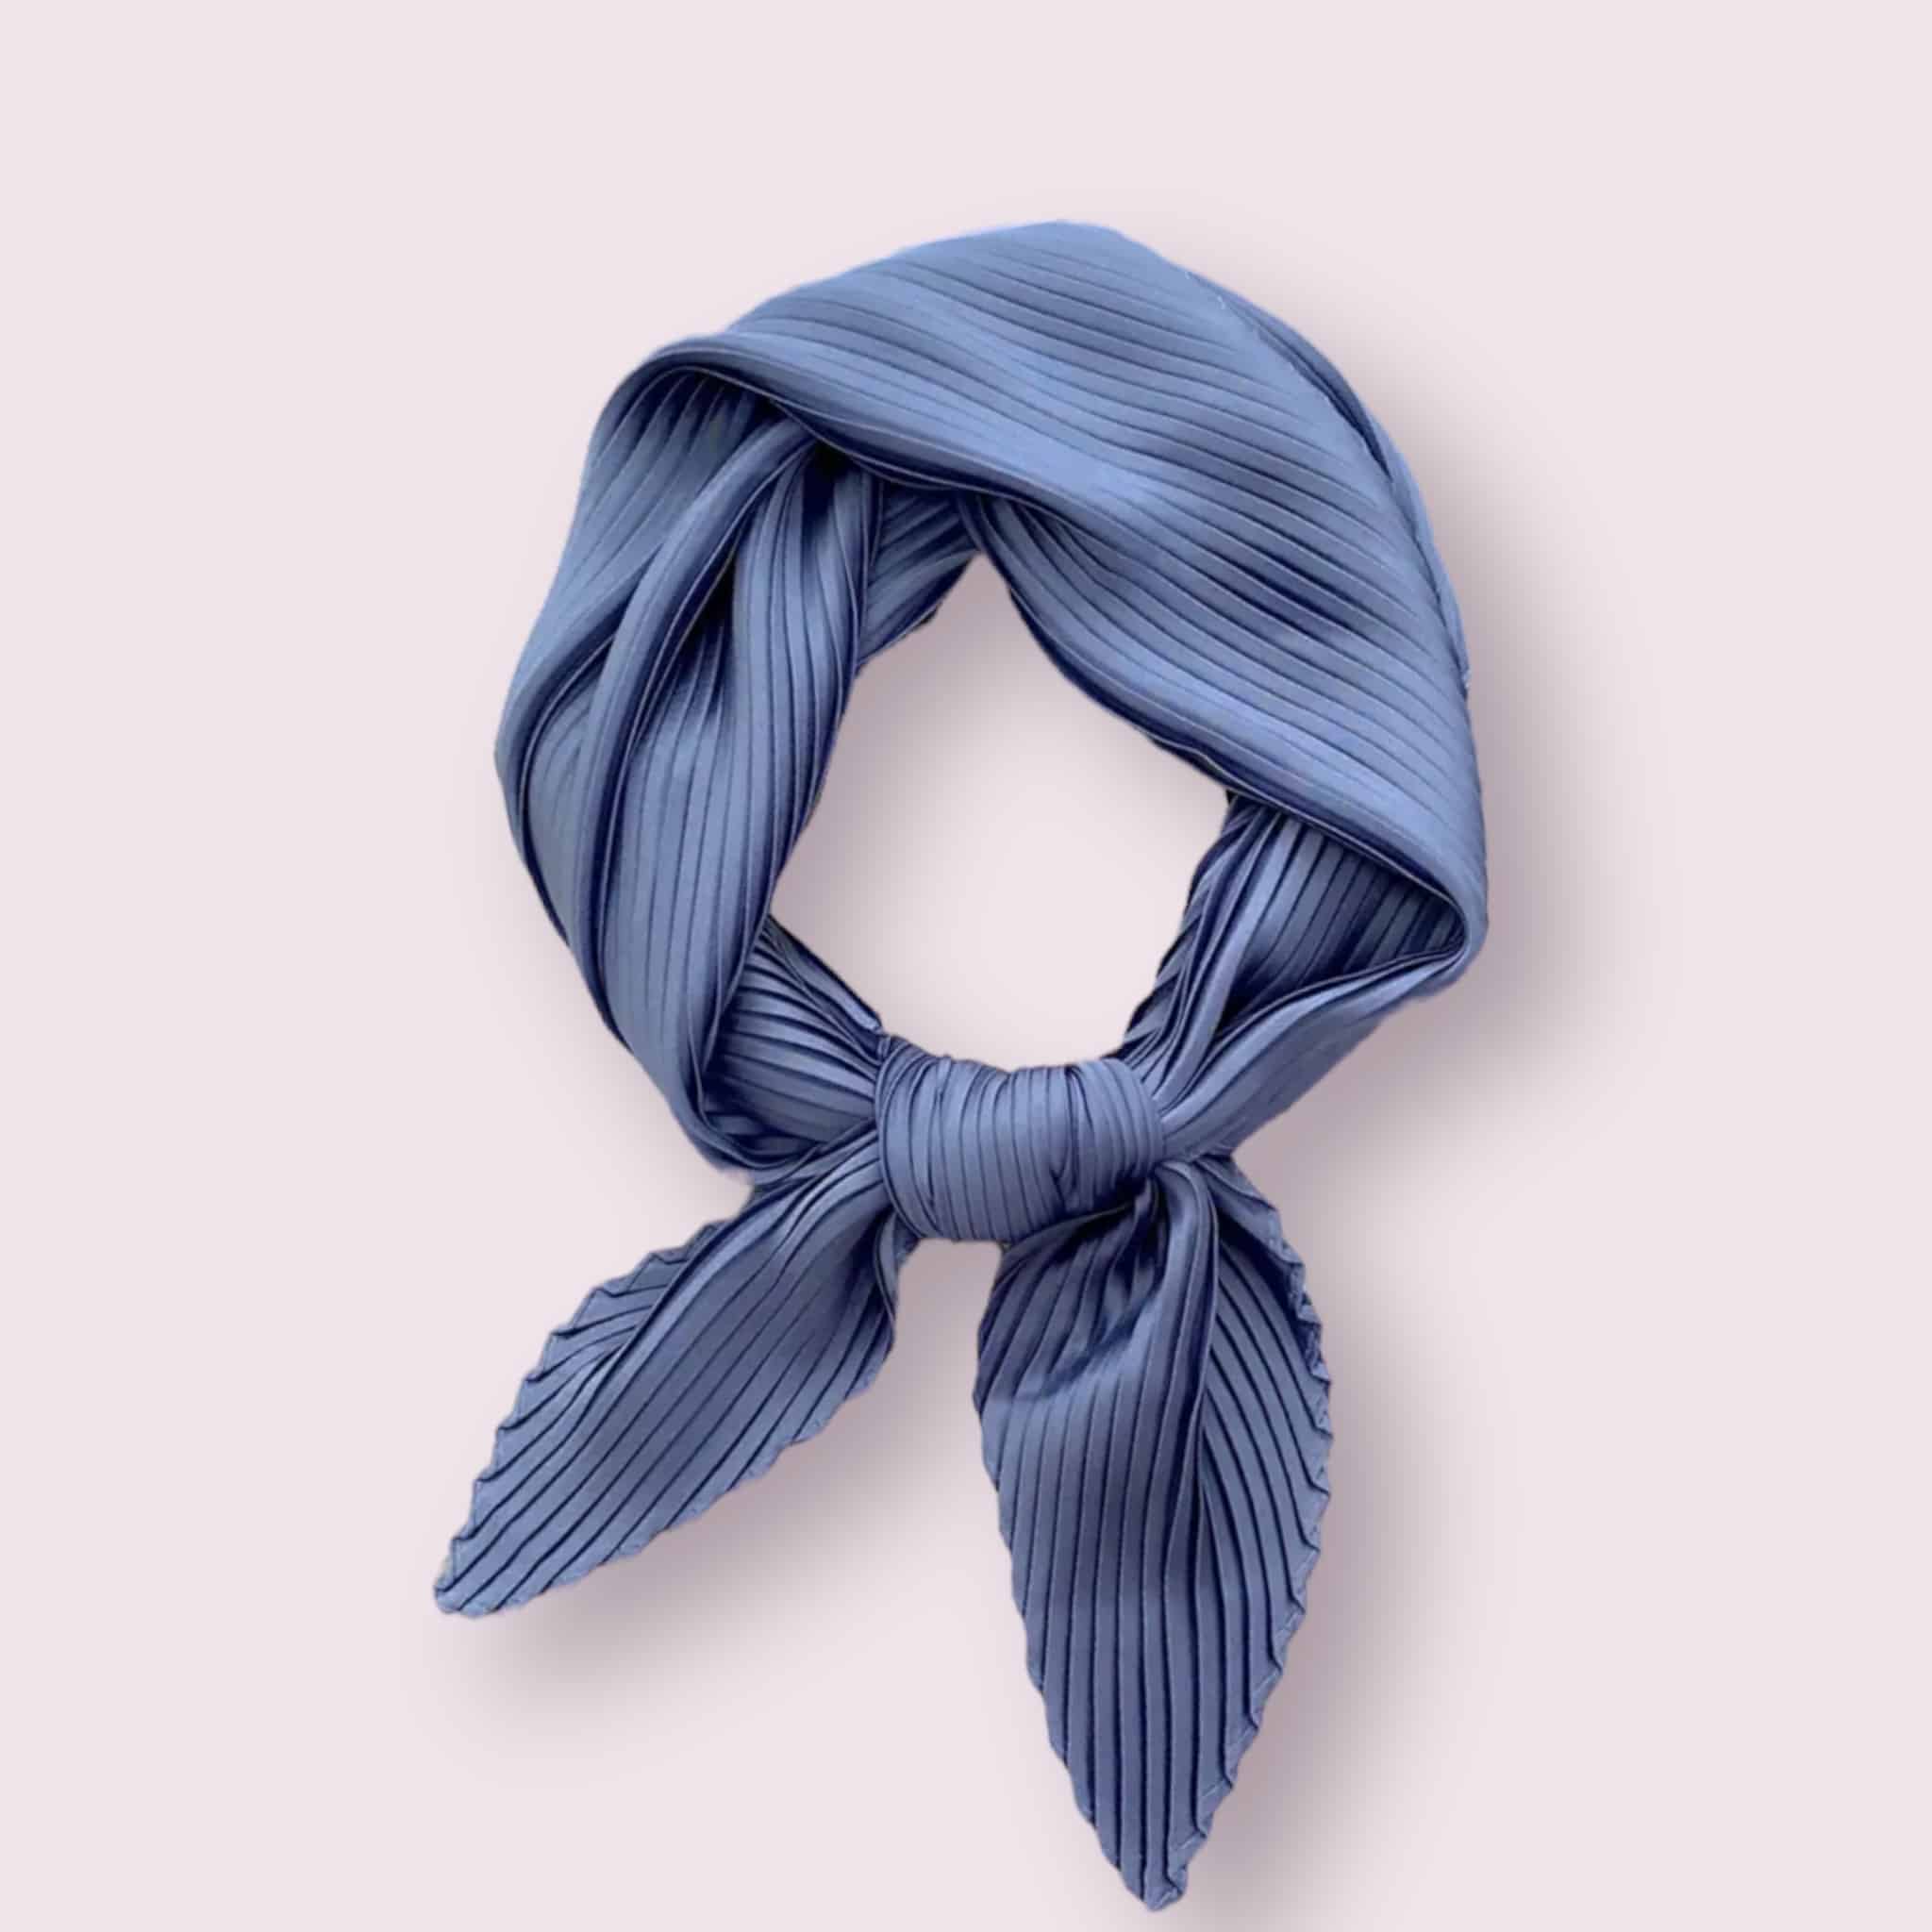 Élégant foulard en satin de couleur bleu, délicatement plissé.